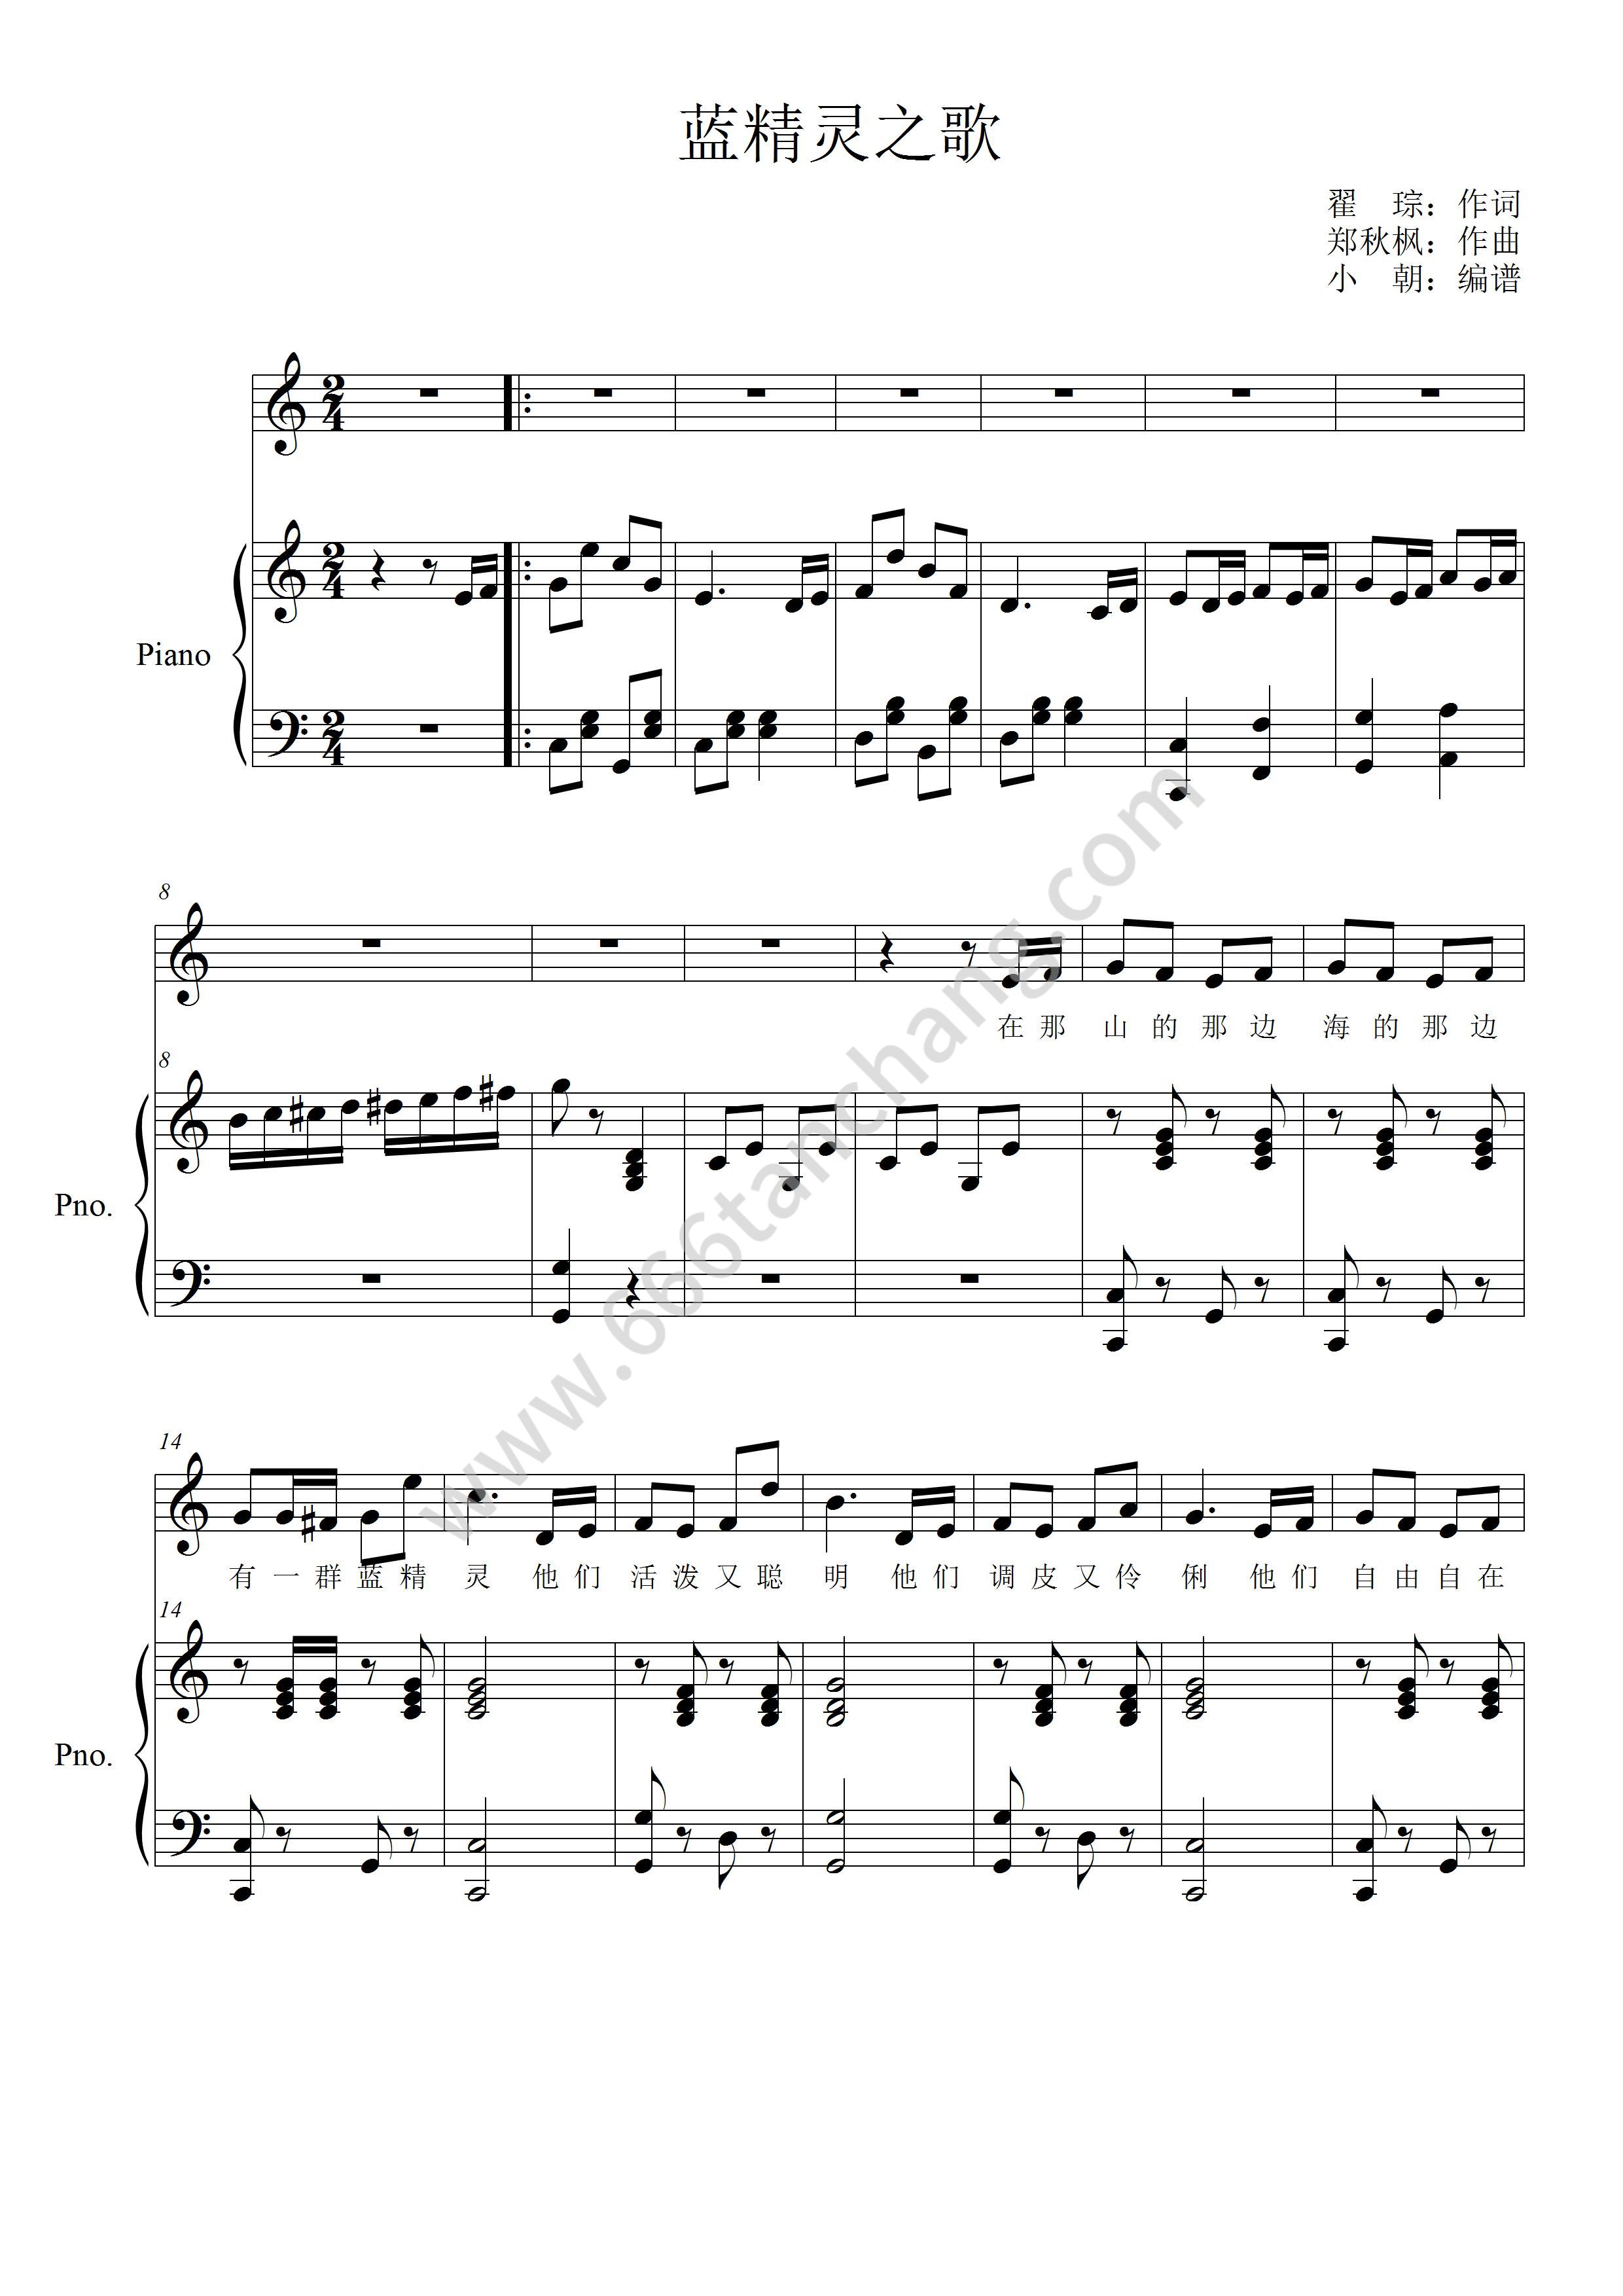 可爱的蓝精灵-The Smurfs五线谱预览2-钢琴谱文件（五线谱、双手简谱、数字谱、Midi、PDF）免费下载